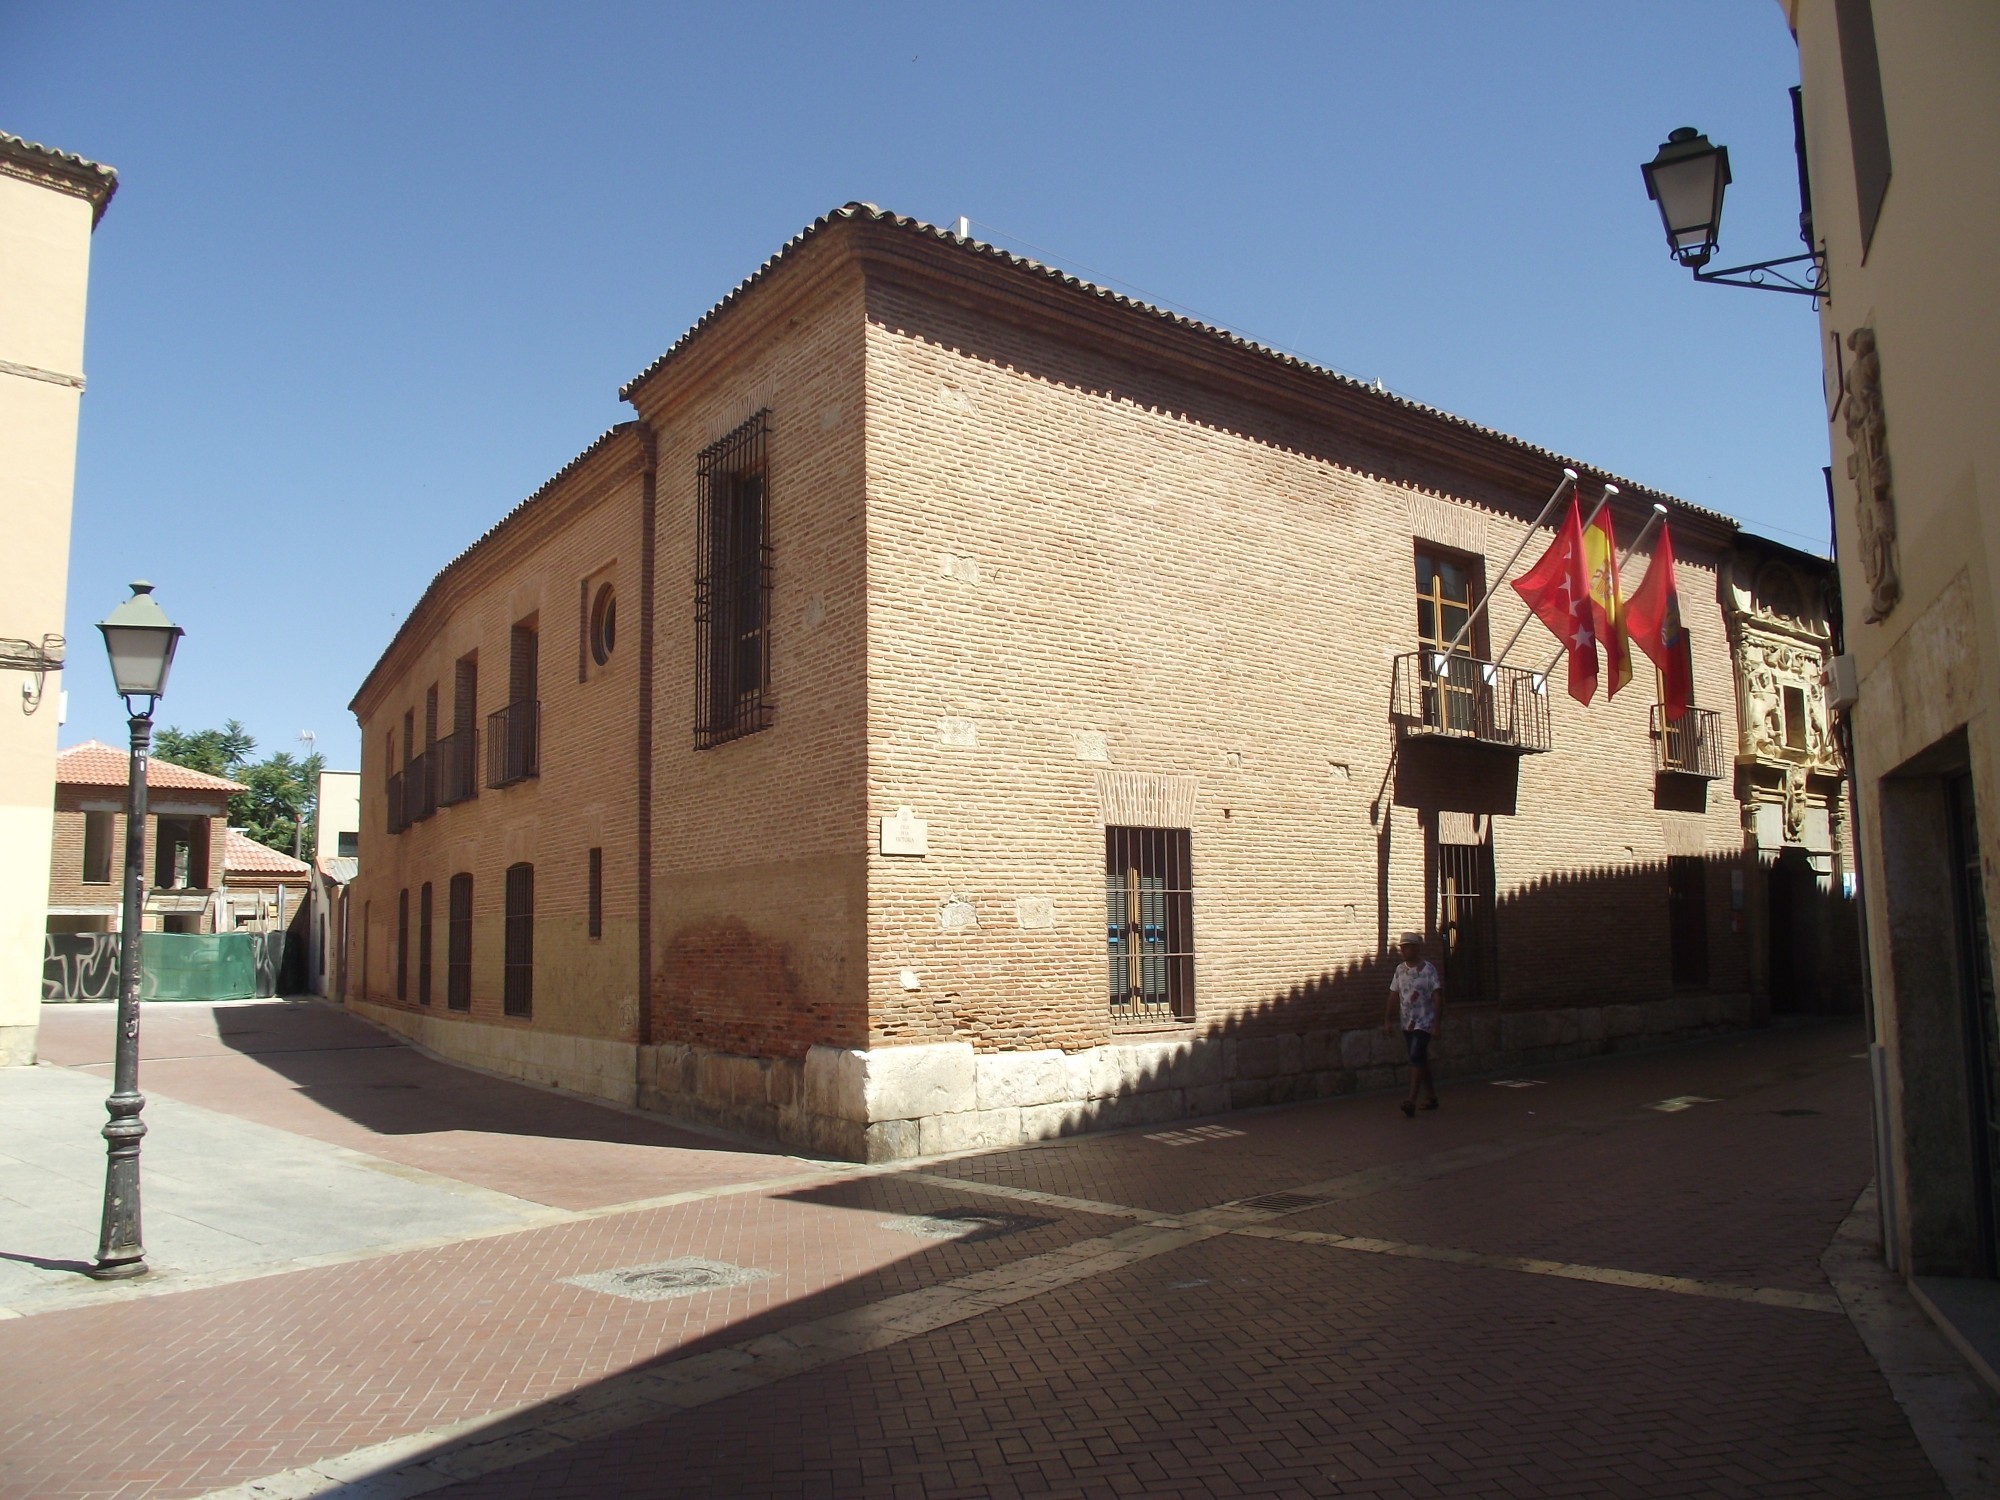 Alcala de Henares, Spain